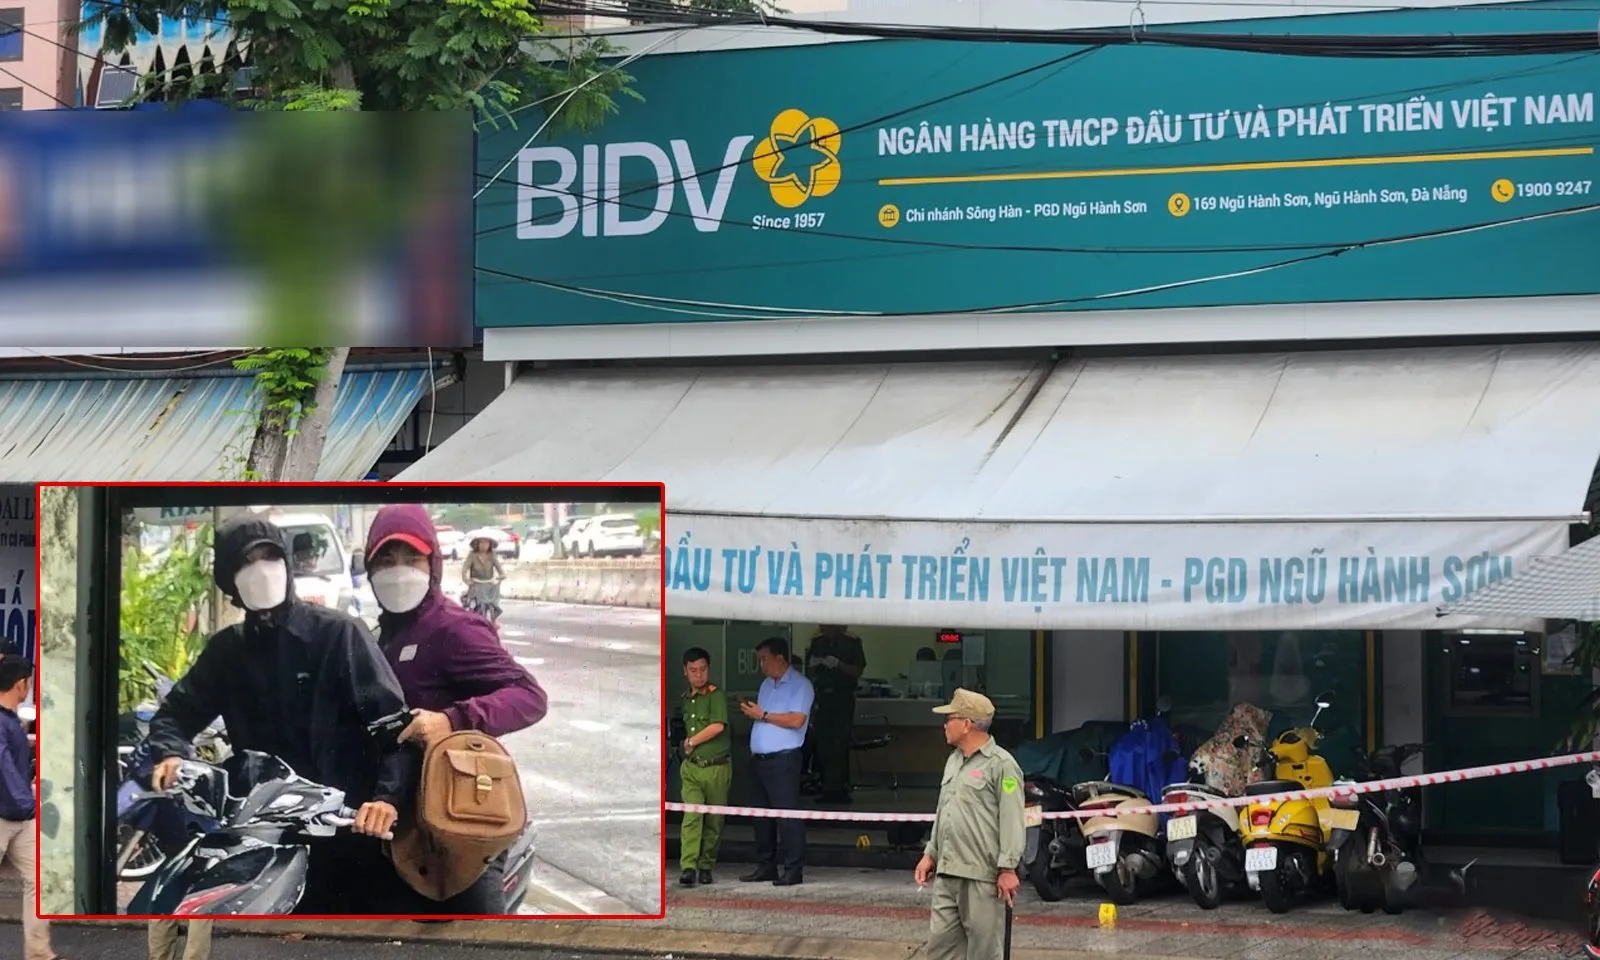 NÓNG: Cướp ngân hàng ở Đà Nẵng, nhân viên bảo vệ bị đâm đã tử vong